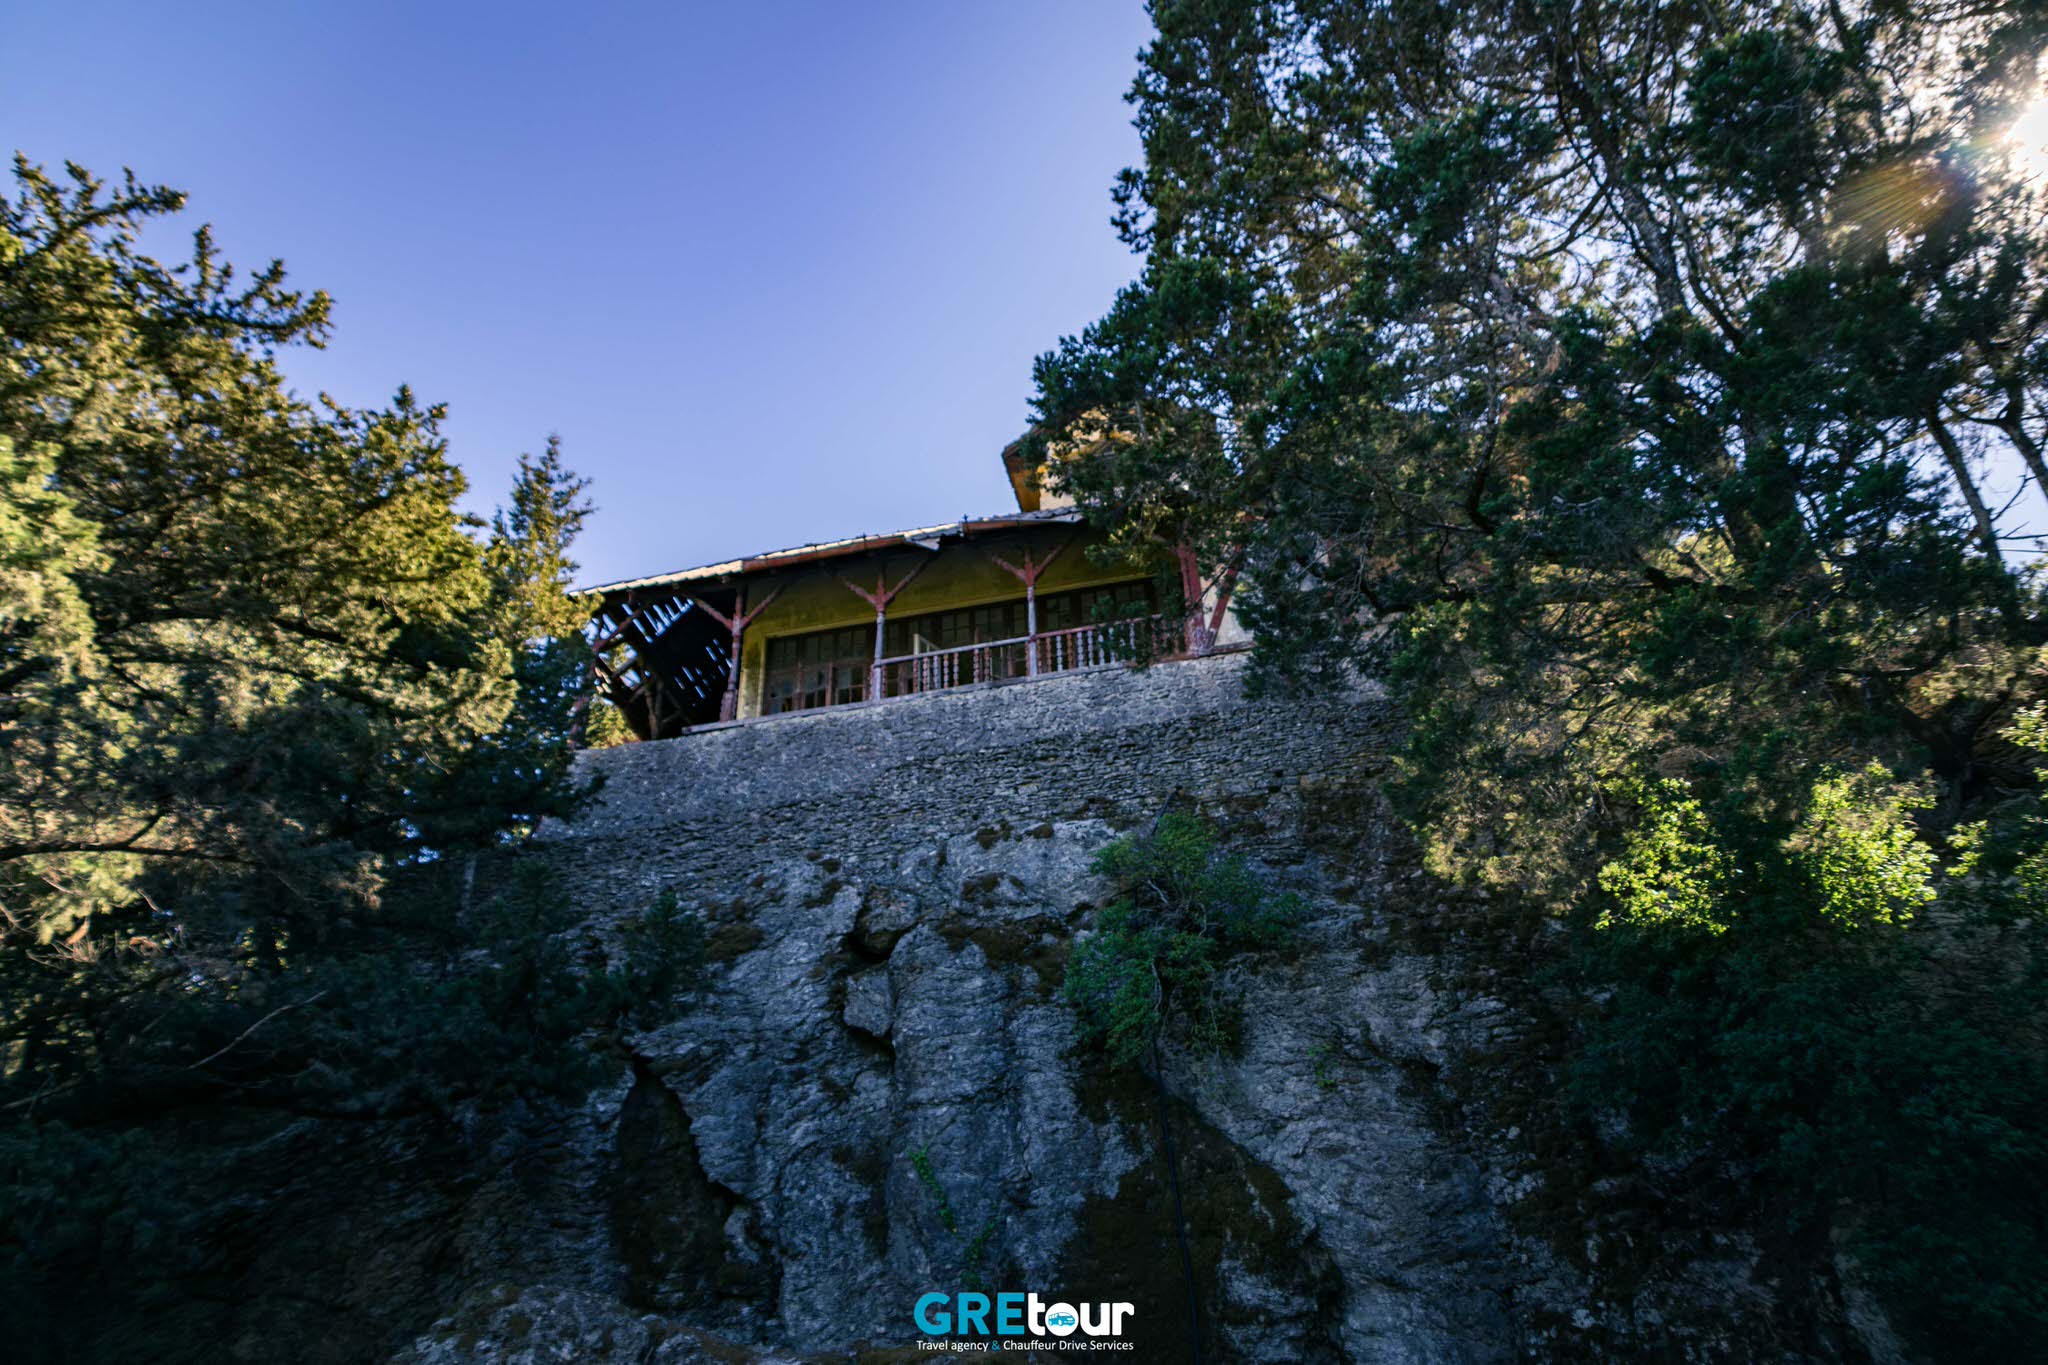 mussolini's villa on Profitis Ilias mountain